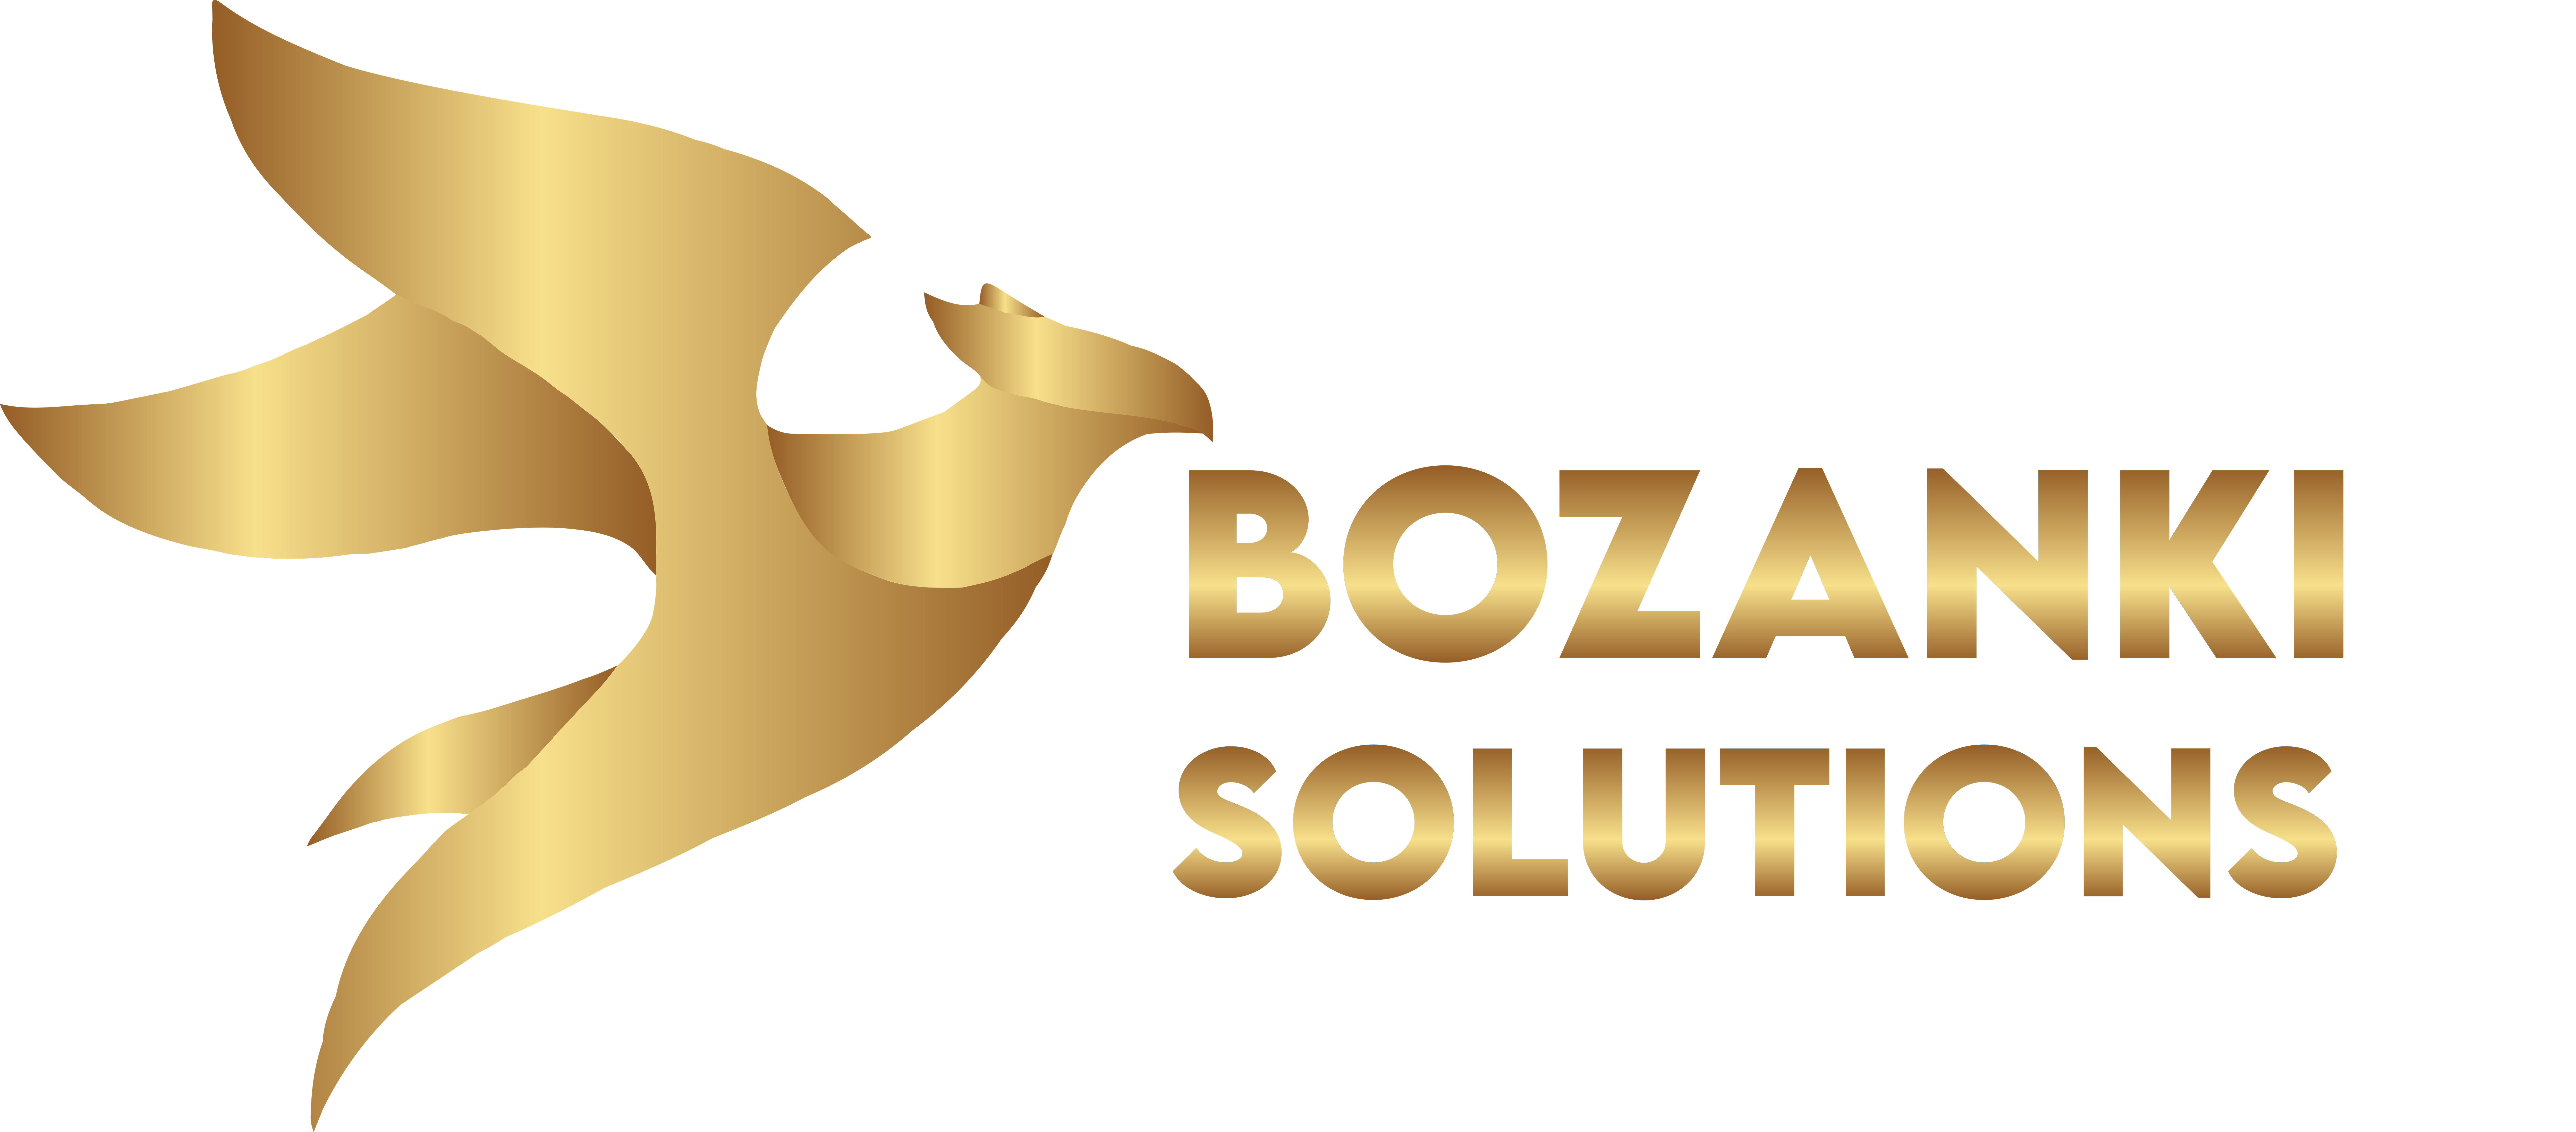 Bozanki